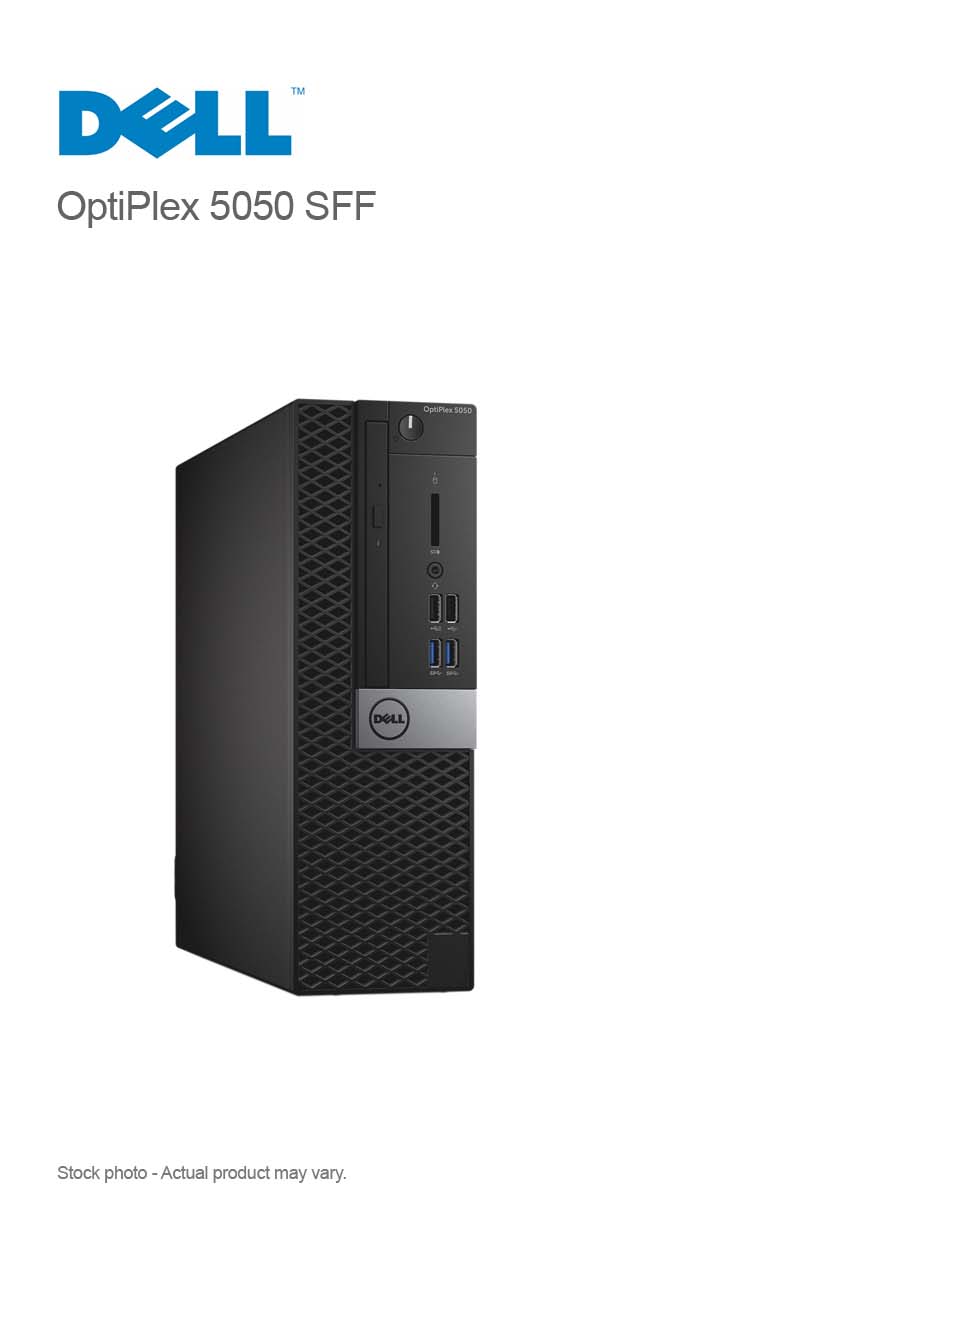 Dell OptiPlex 5050 SFF Core i5-7600 3.5GHz, 8GB, 256GB SSD, WIN 10 Pro